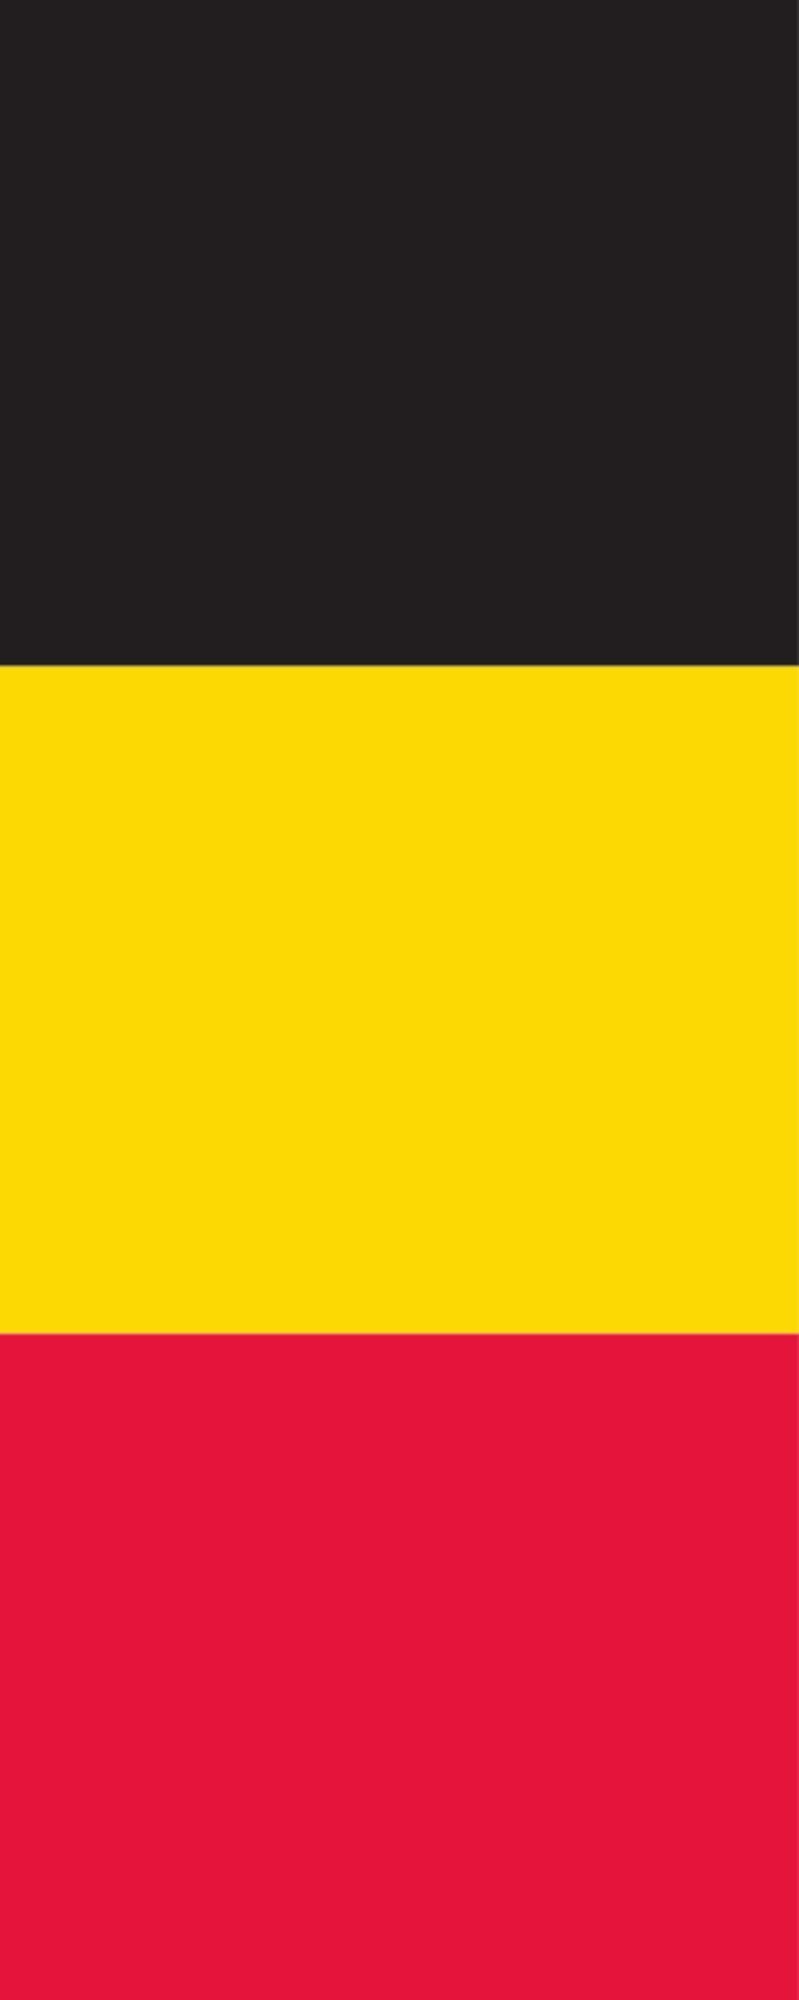 flaggenmeer g/m² Belgien 160 Hochformat Flagge